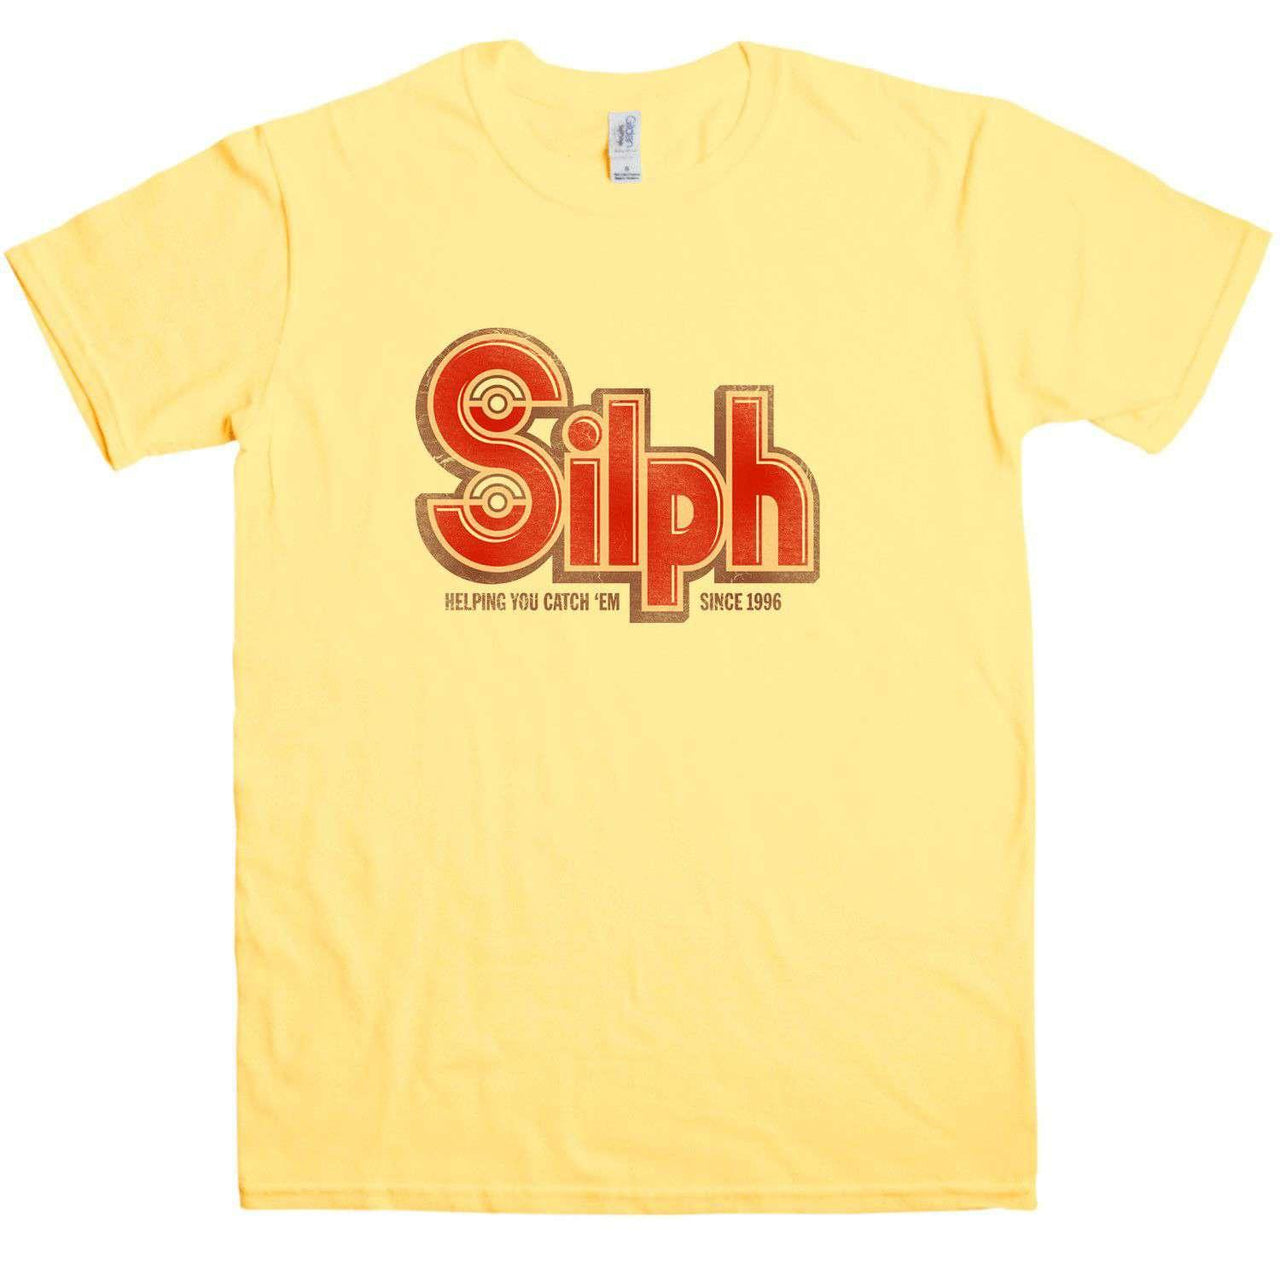 Silph Graphic T-Shirt For Men 8Ball